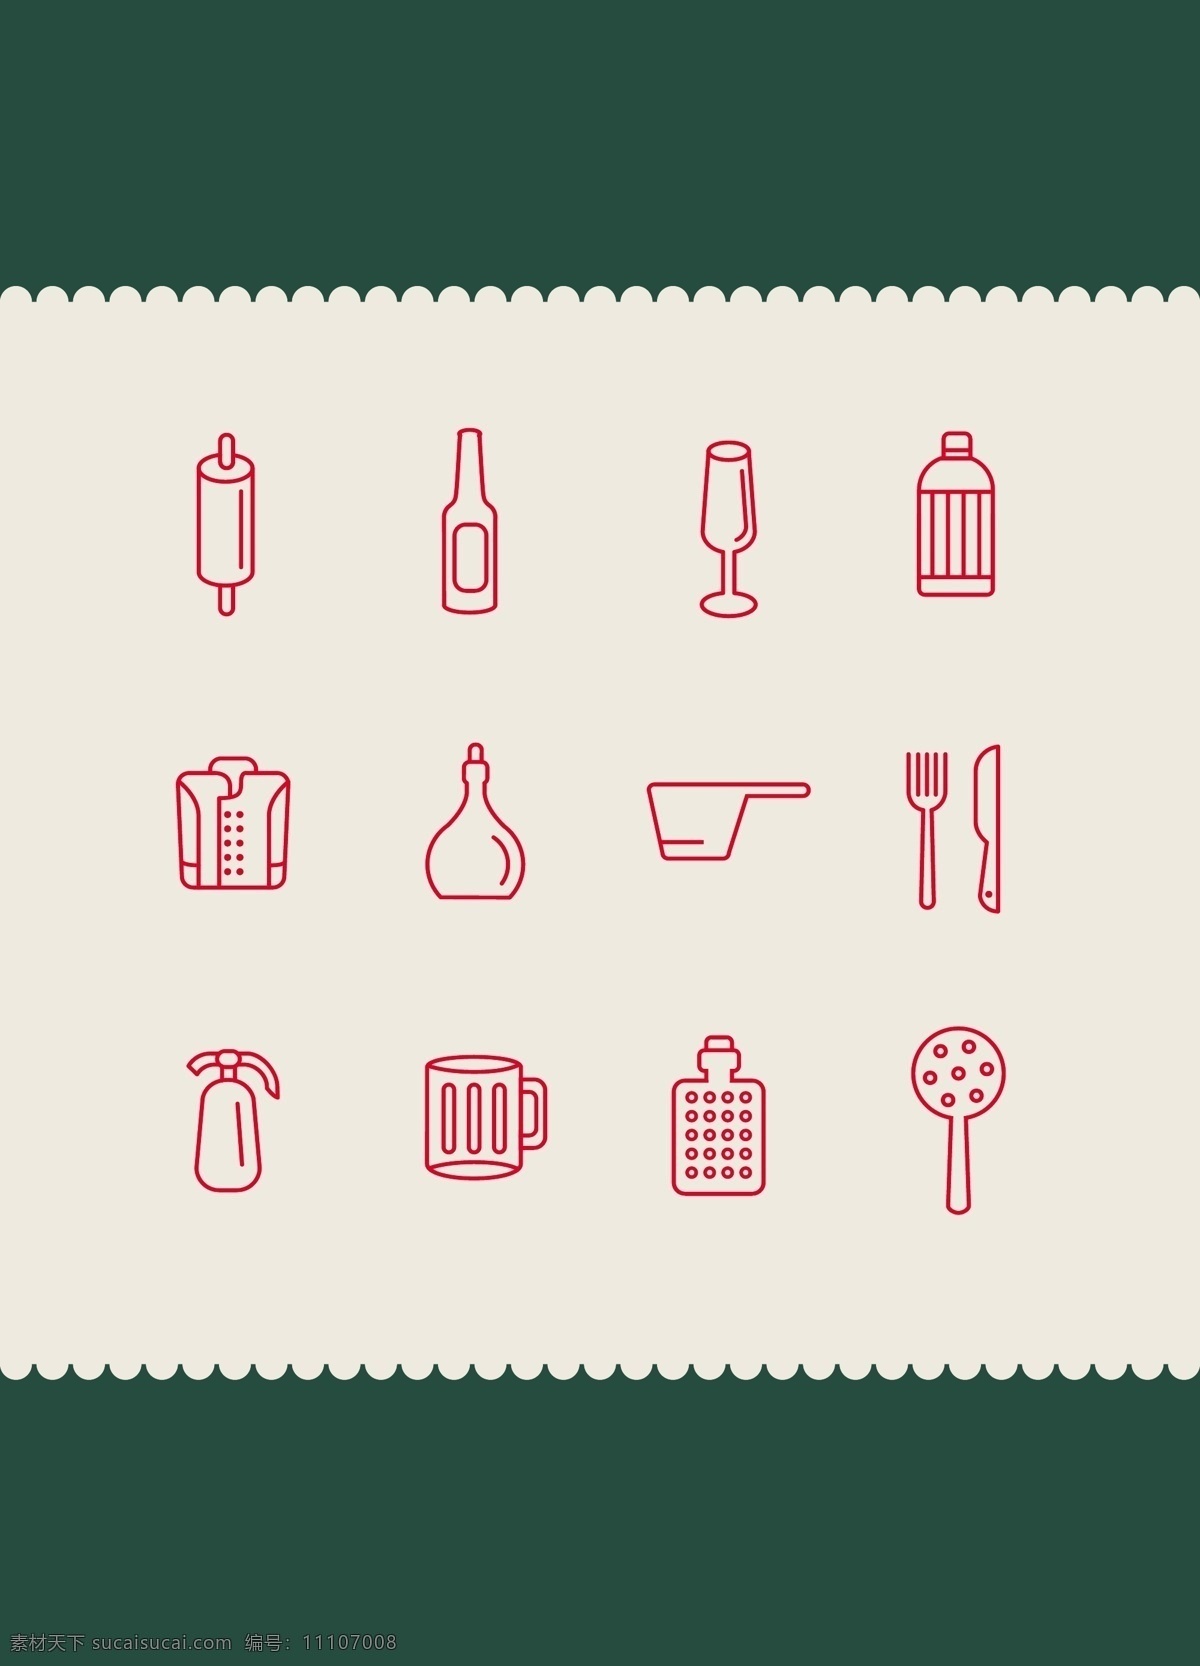 厨具图标 app 厨具 图标 厨师 厨房 icon 简约 移动界面设计 图标设计